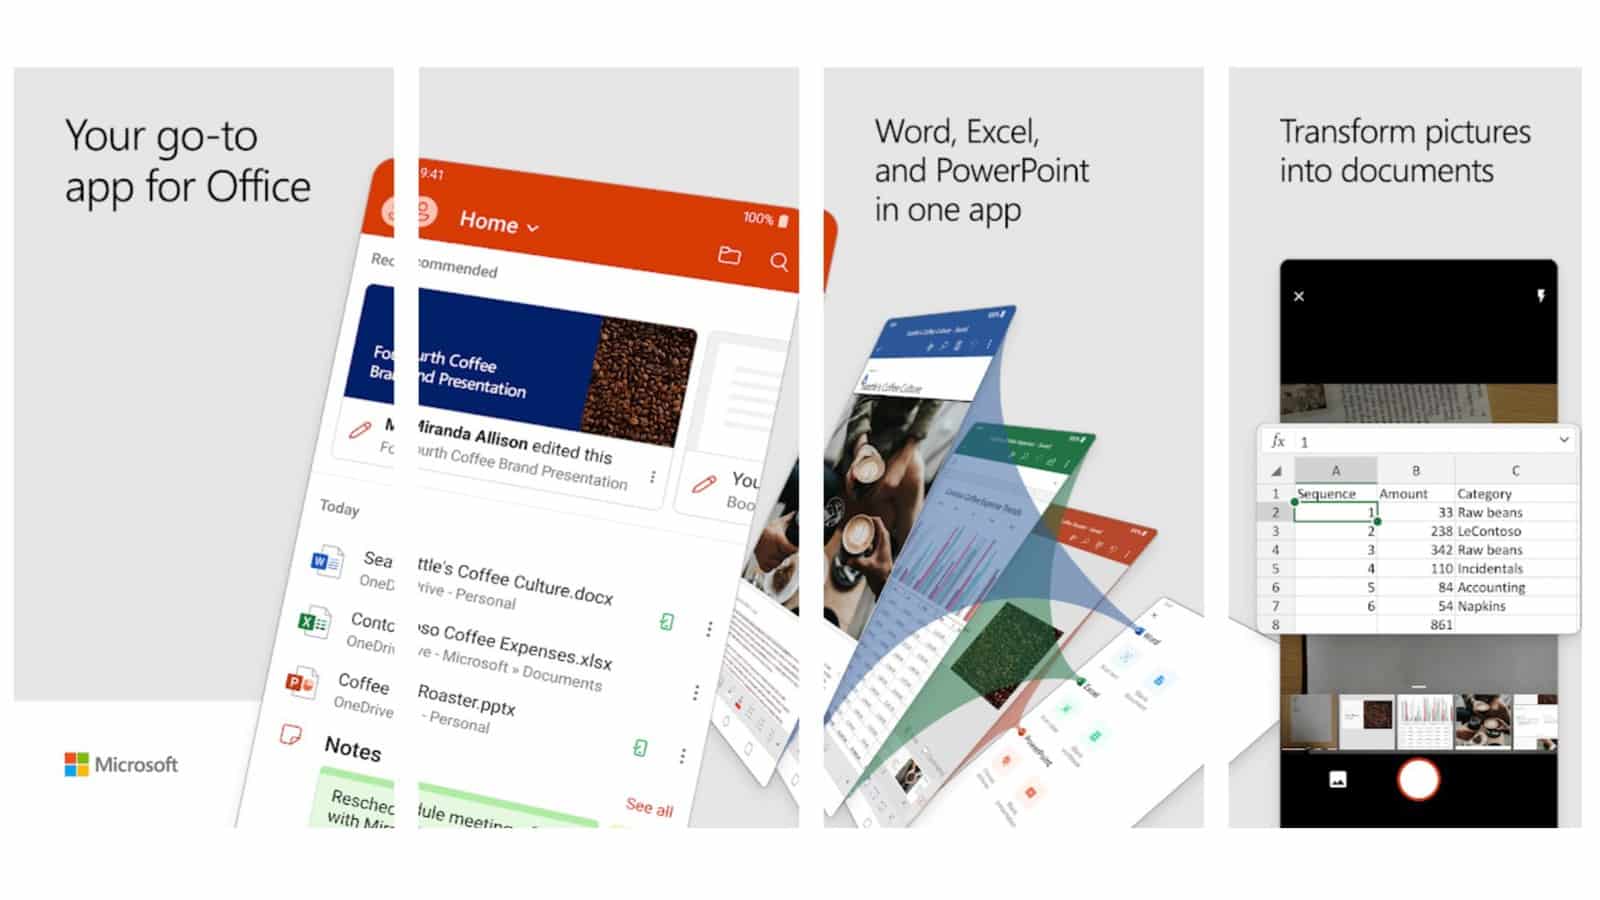 全新 Microsoft Office 程式 整合多项功能暂支援 Android 手机